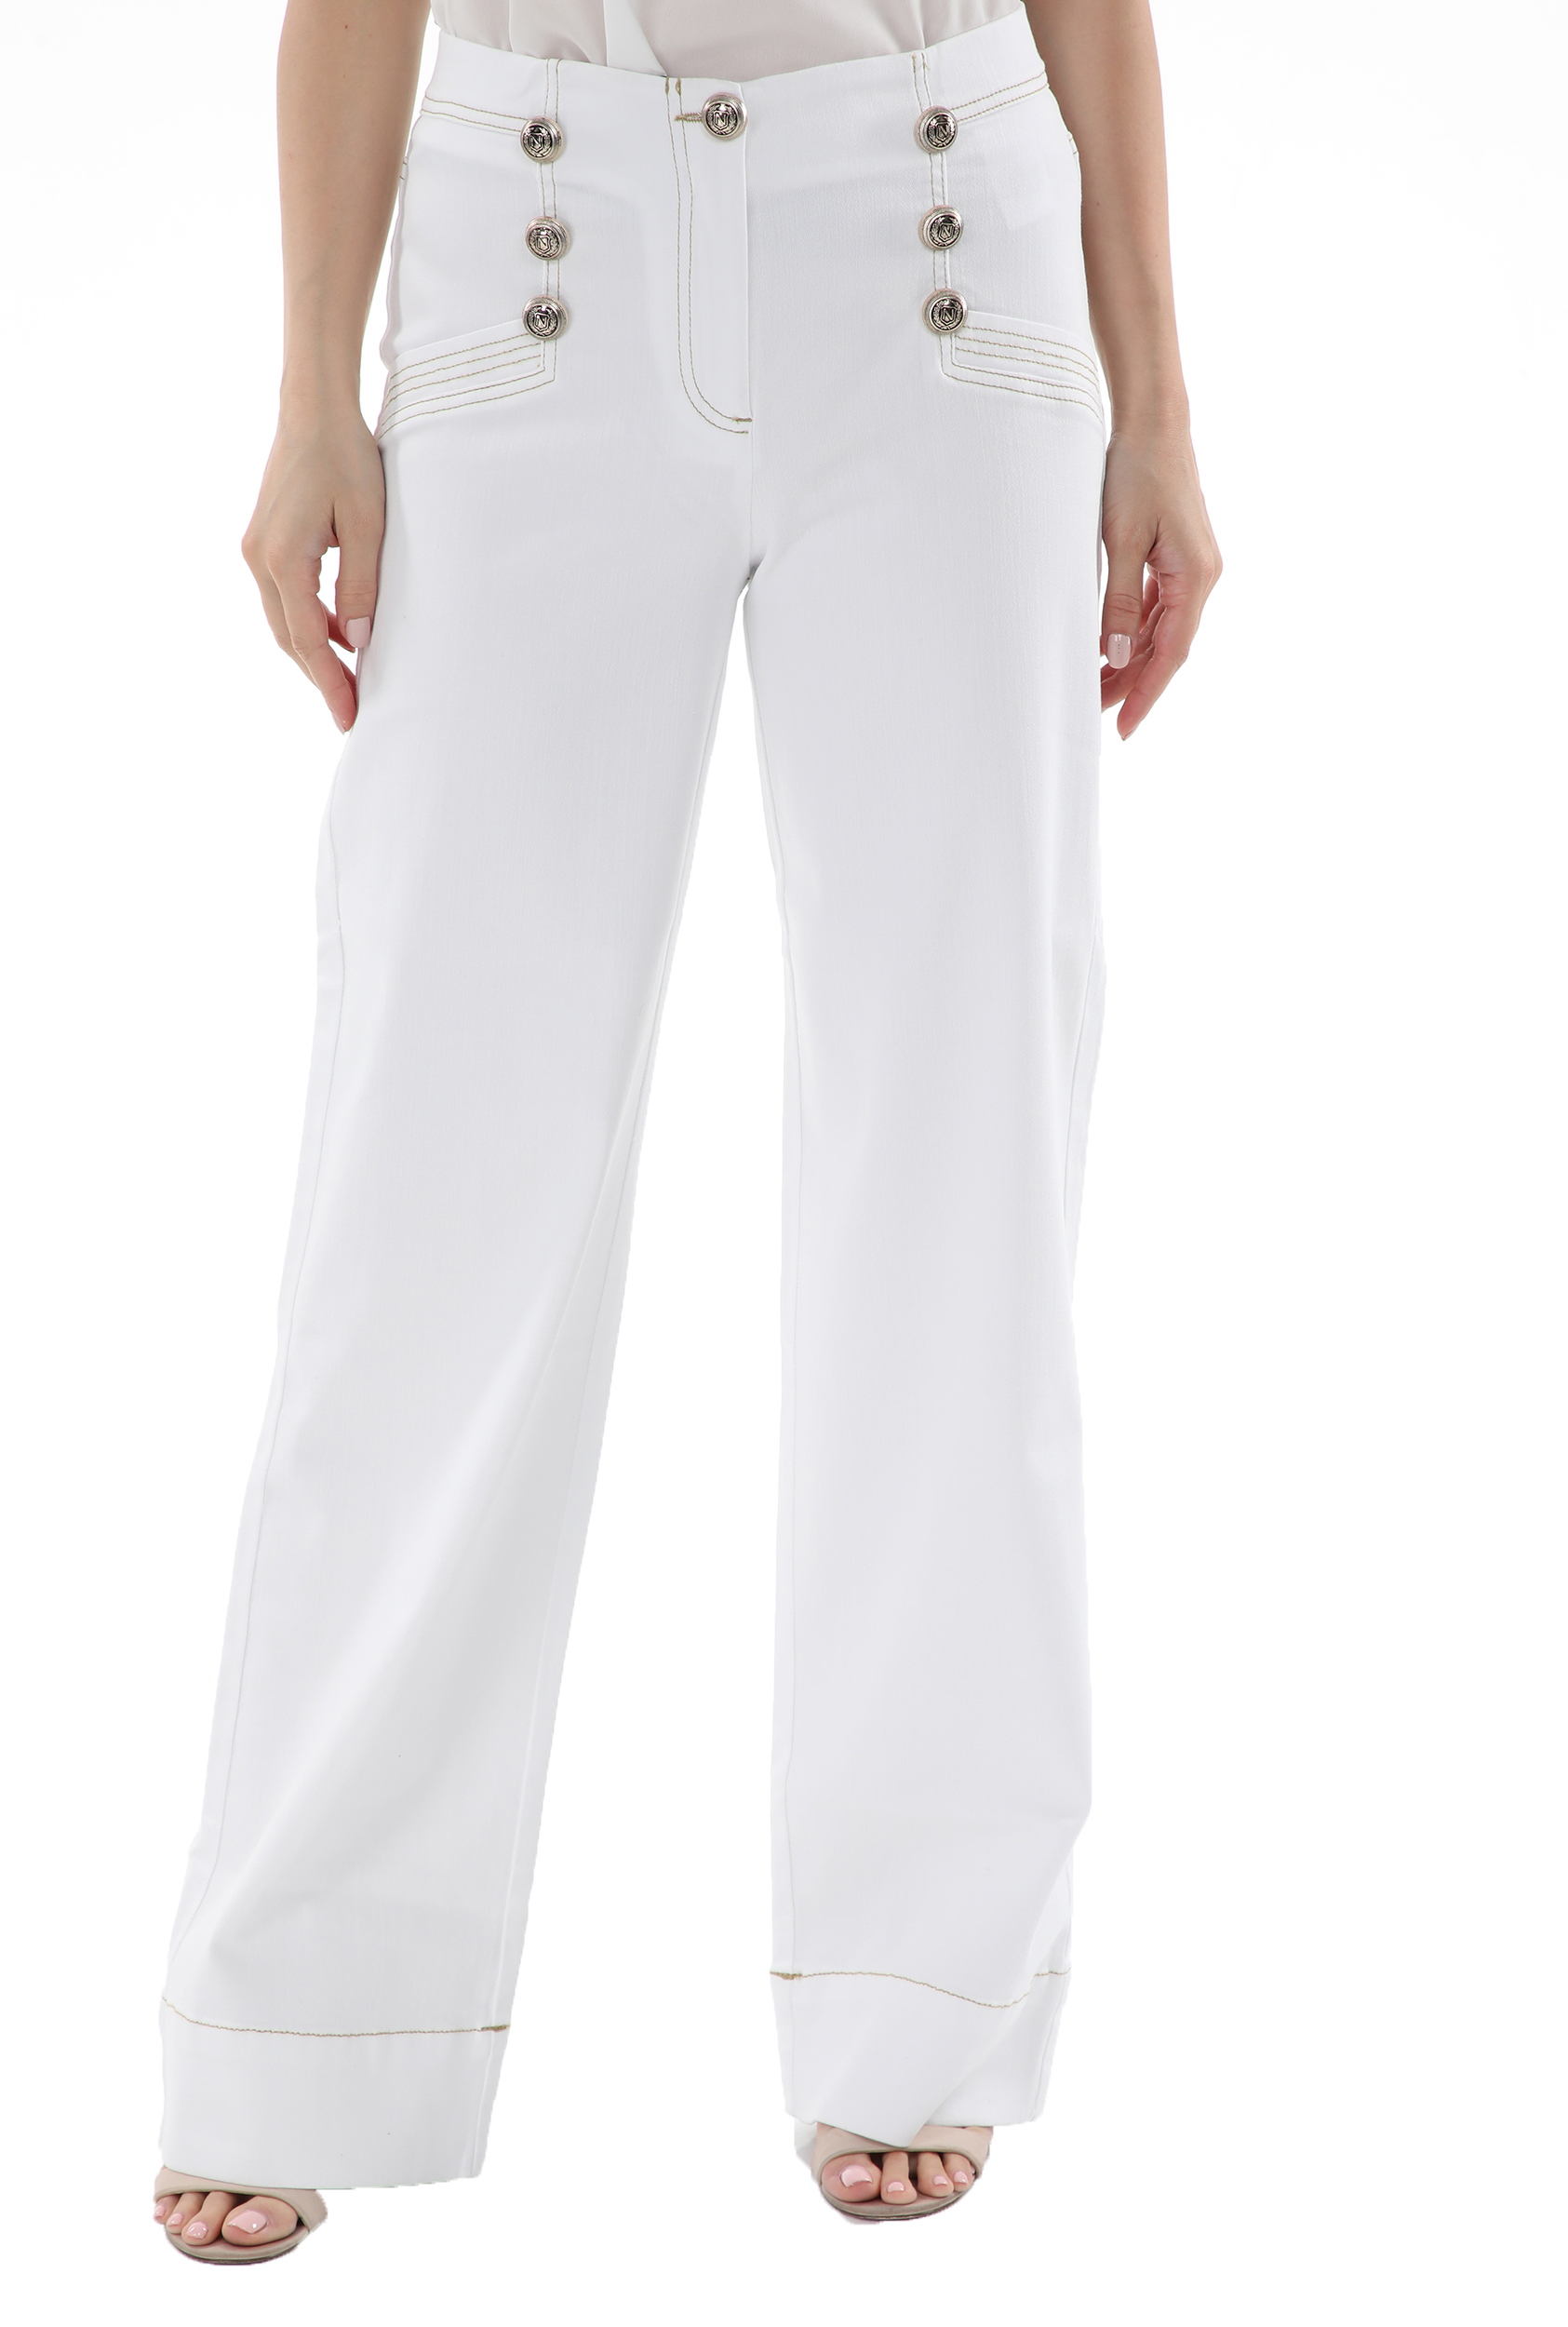 Γυναικεία/Ρούχα/Παντελόνια/Παντελόνες NENETTE - Γυναικεία παντελόνα NENETTE J-SINATRA PANT PALAZZO TINTO CAPO λευκή